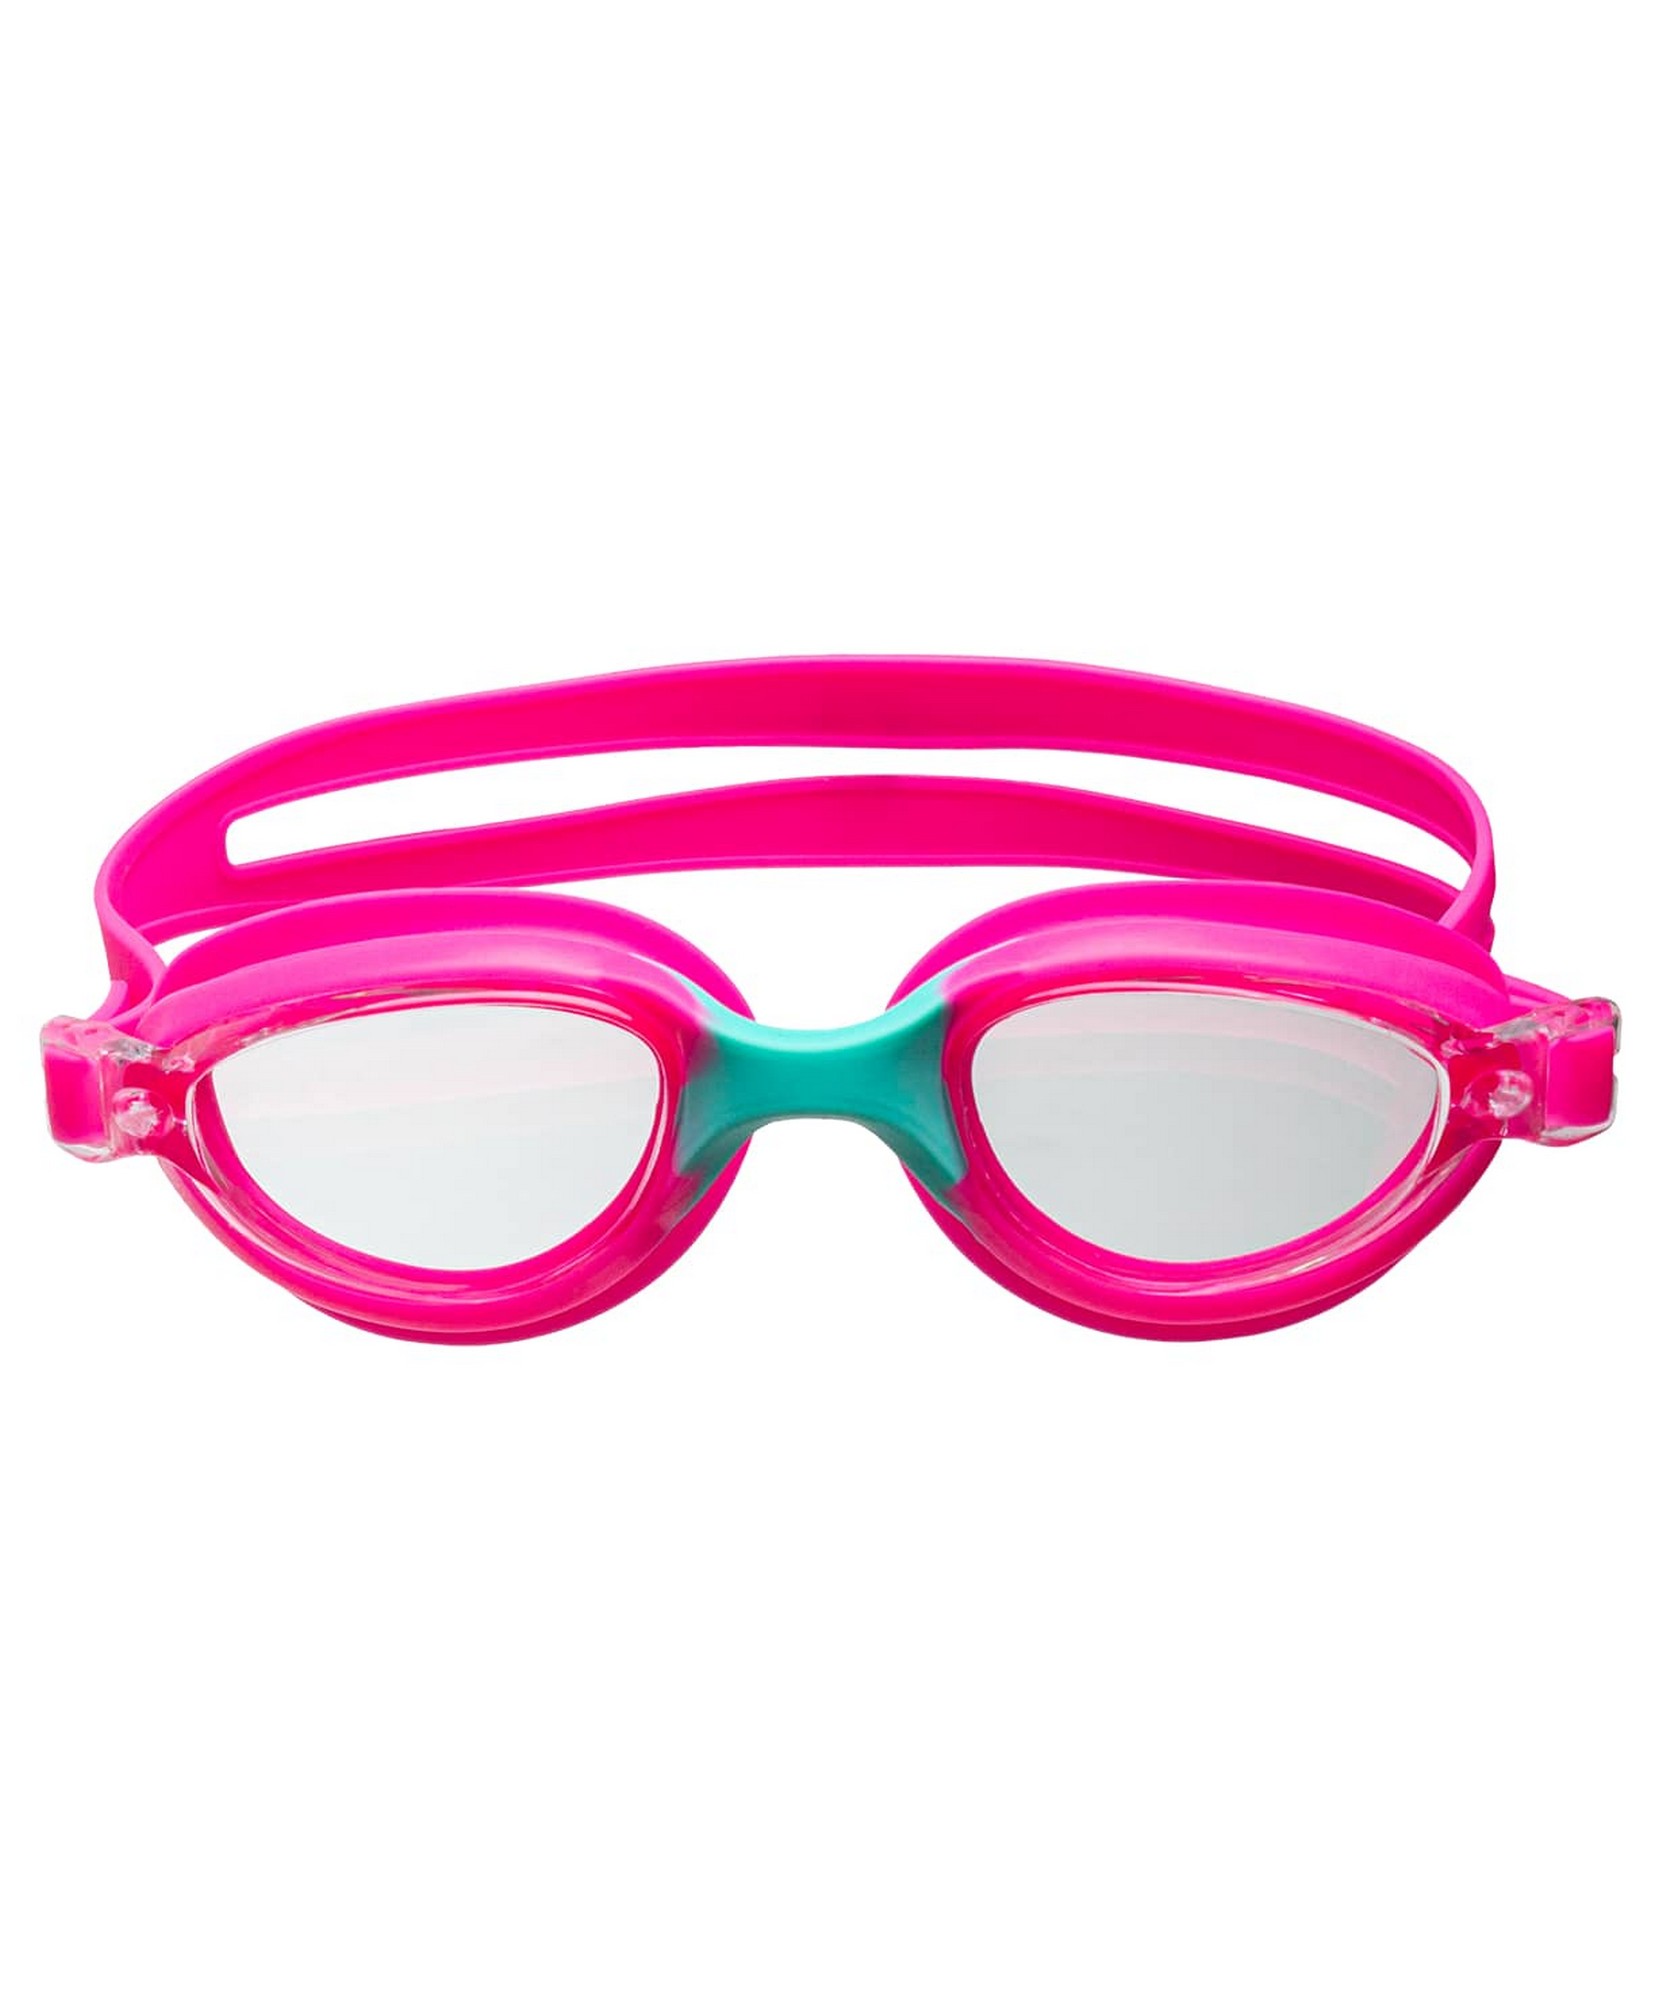 Очки для плавания детские 25Degrees Coral Pink\Turquoise 1663_2000